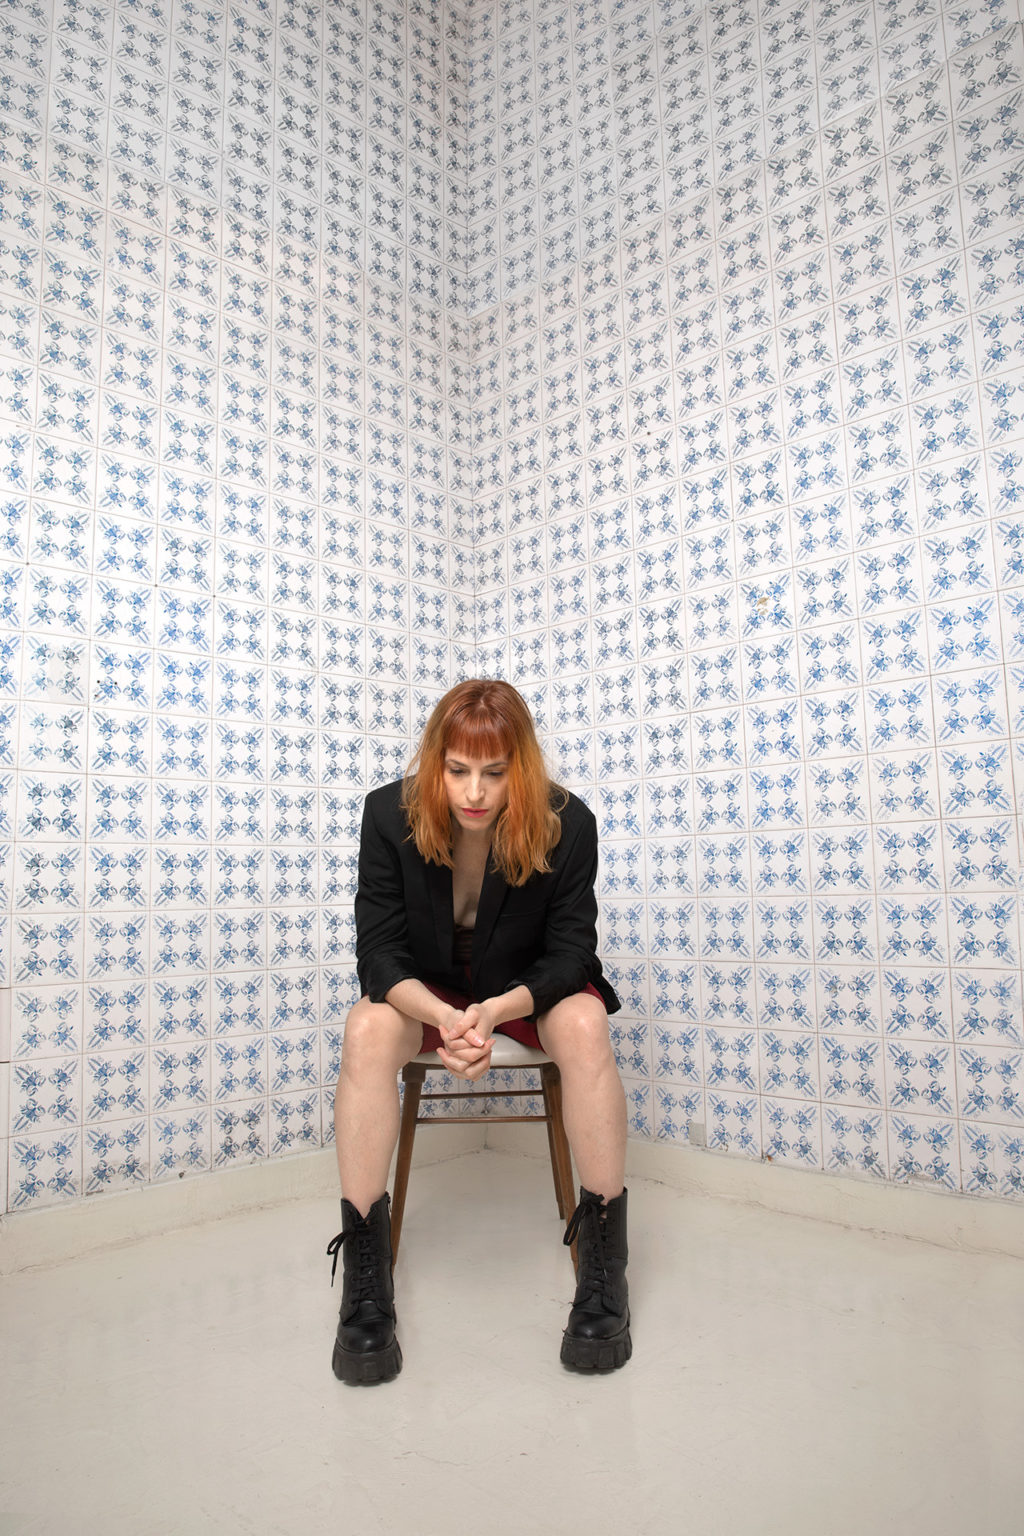 Marina Otero est assise sur une chaise. Elle est habillée en noir. Elle regarde le sol. Derrière elle, un mur de carreaux blancs et bleus.